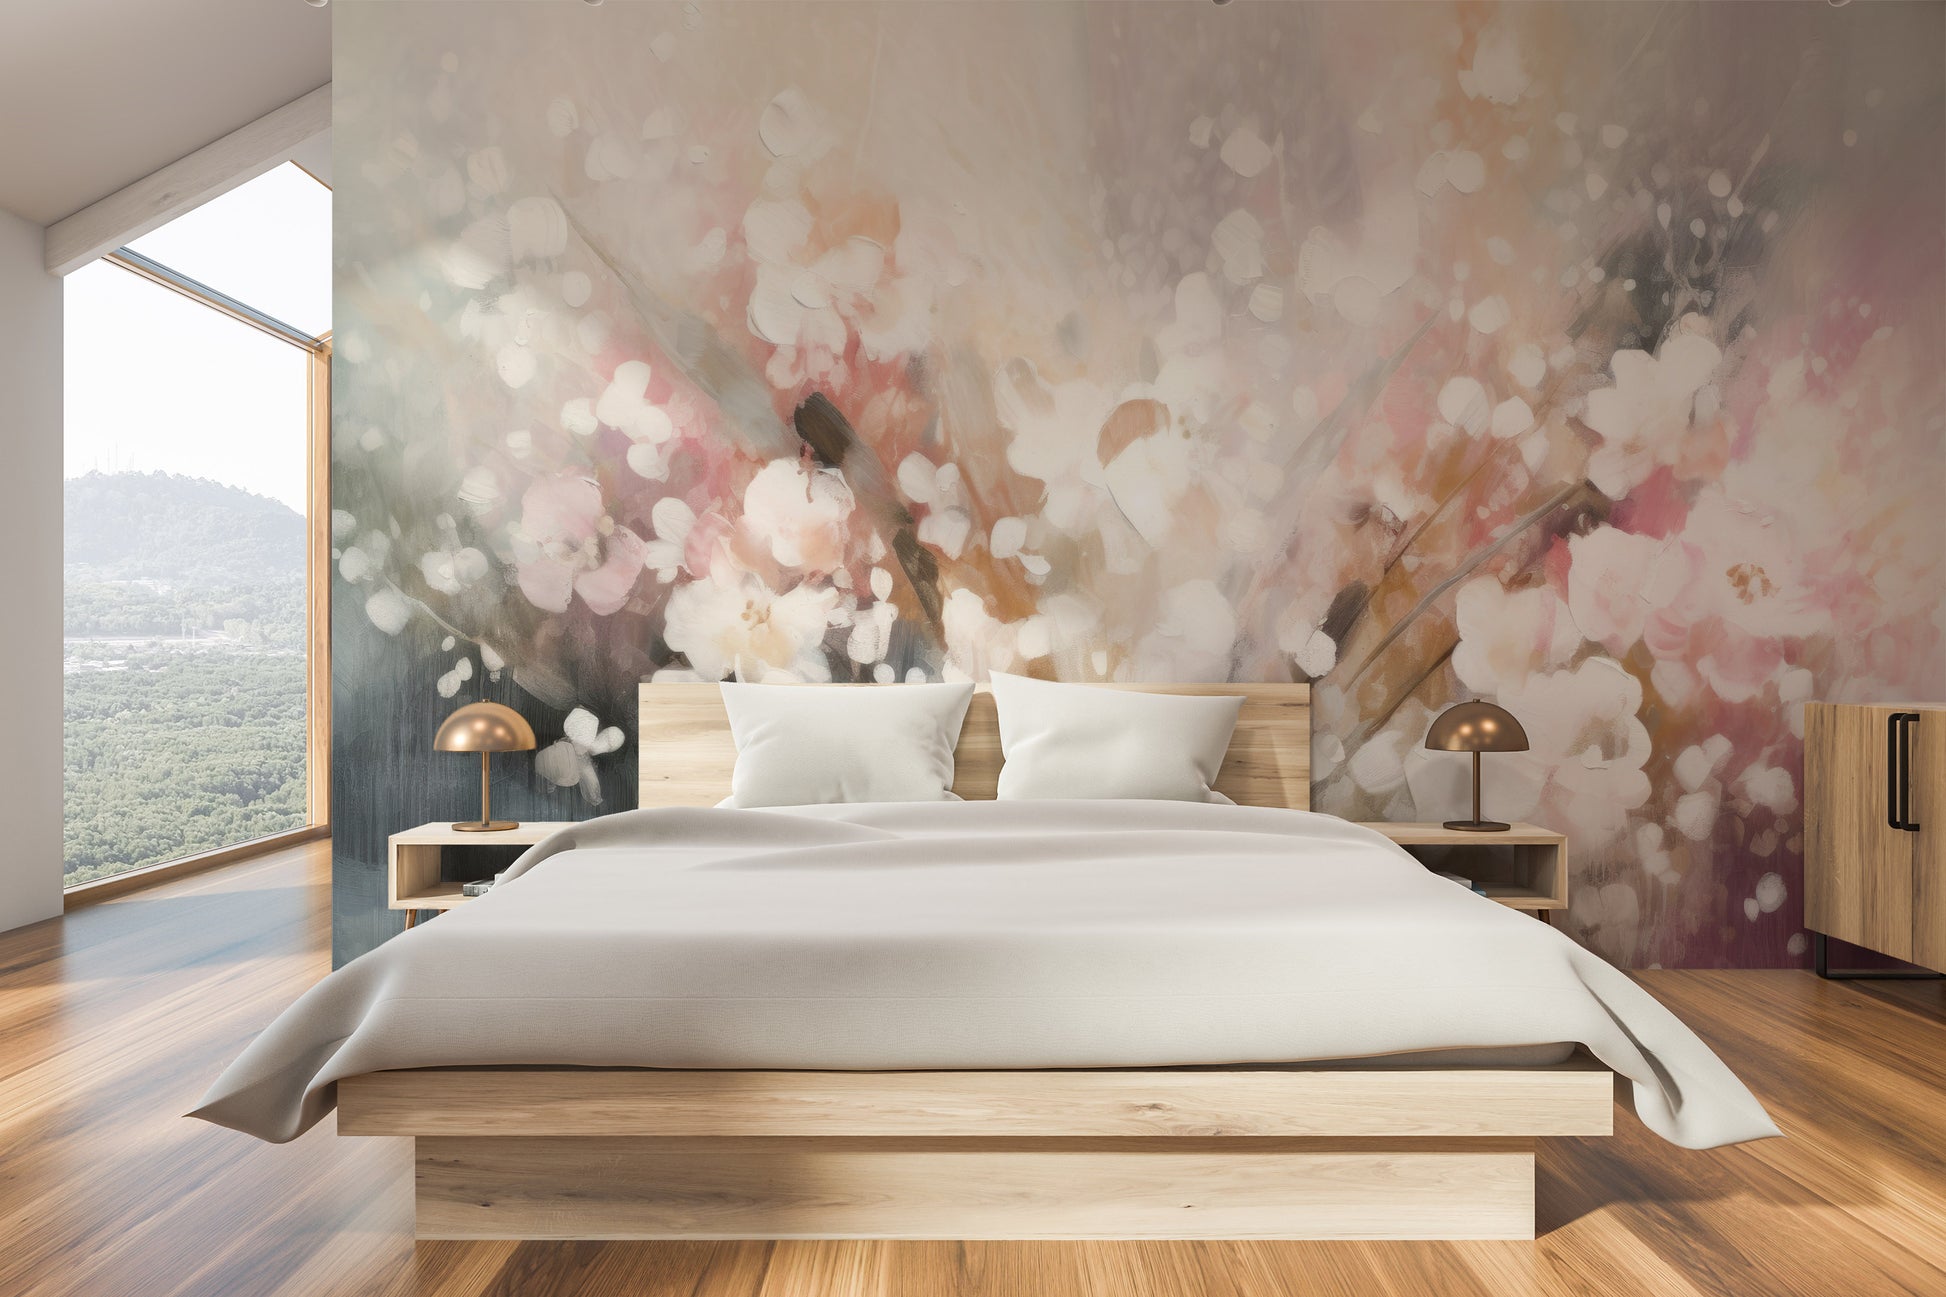 Fototapeta artystyczna o nazwie Blossom Softness pokazana w aranżacji wnętrza.